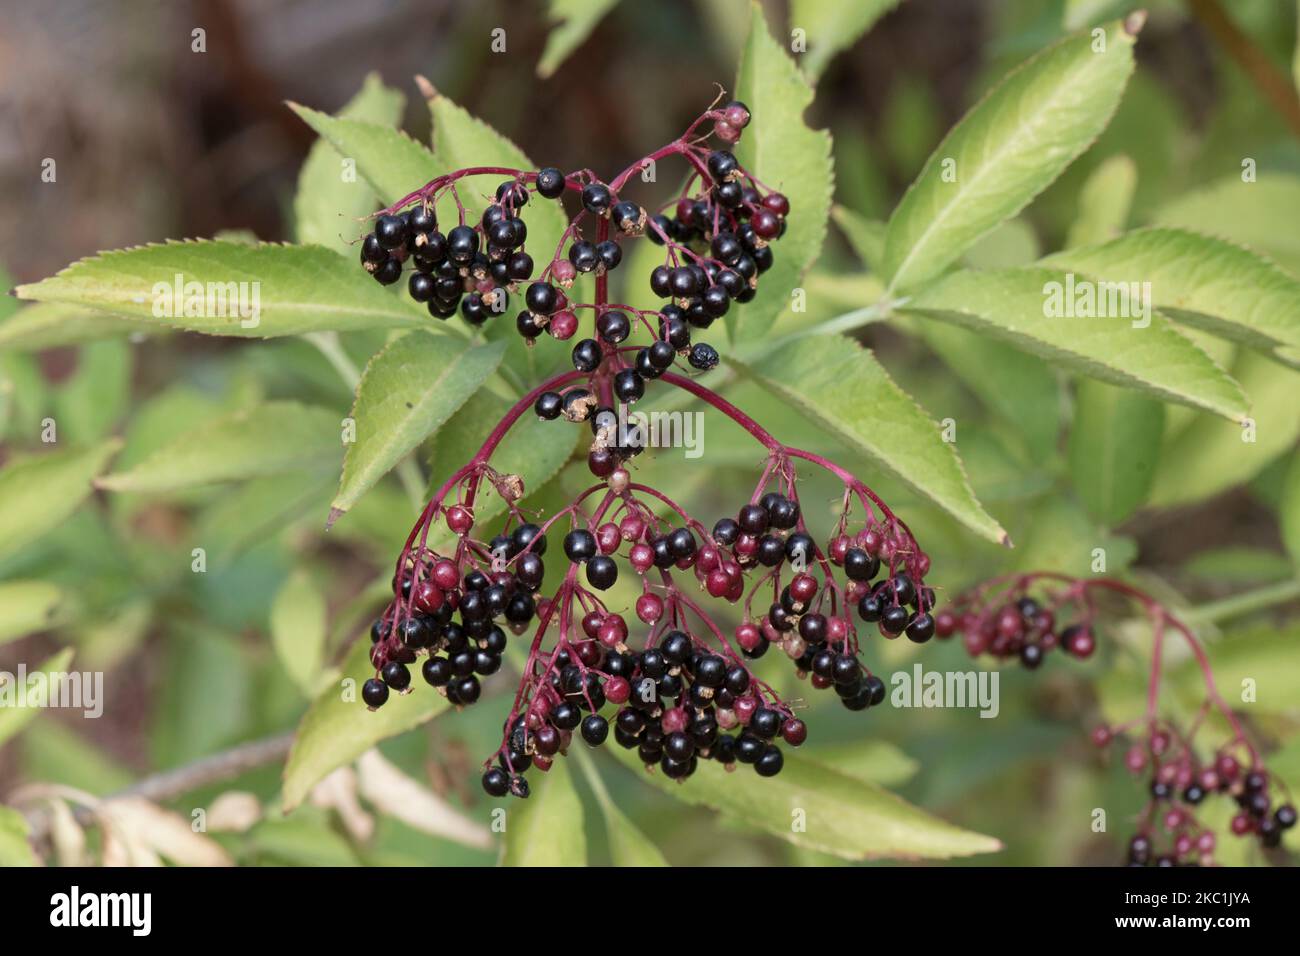 Racimo de bayas de maduración en saúco o saúco (Sambucus nigra) en el arbusto que va de negro a rosa y rojo, Berkshire, agosto Foto de stock